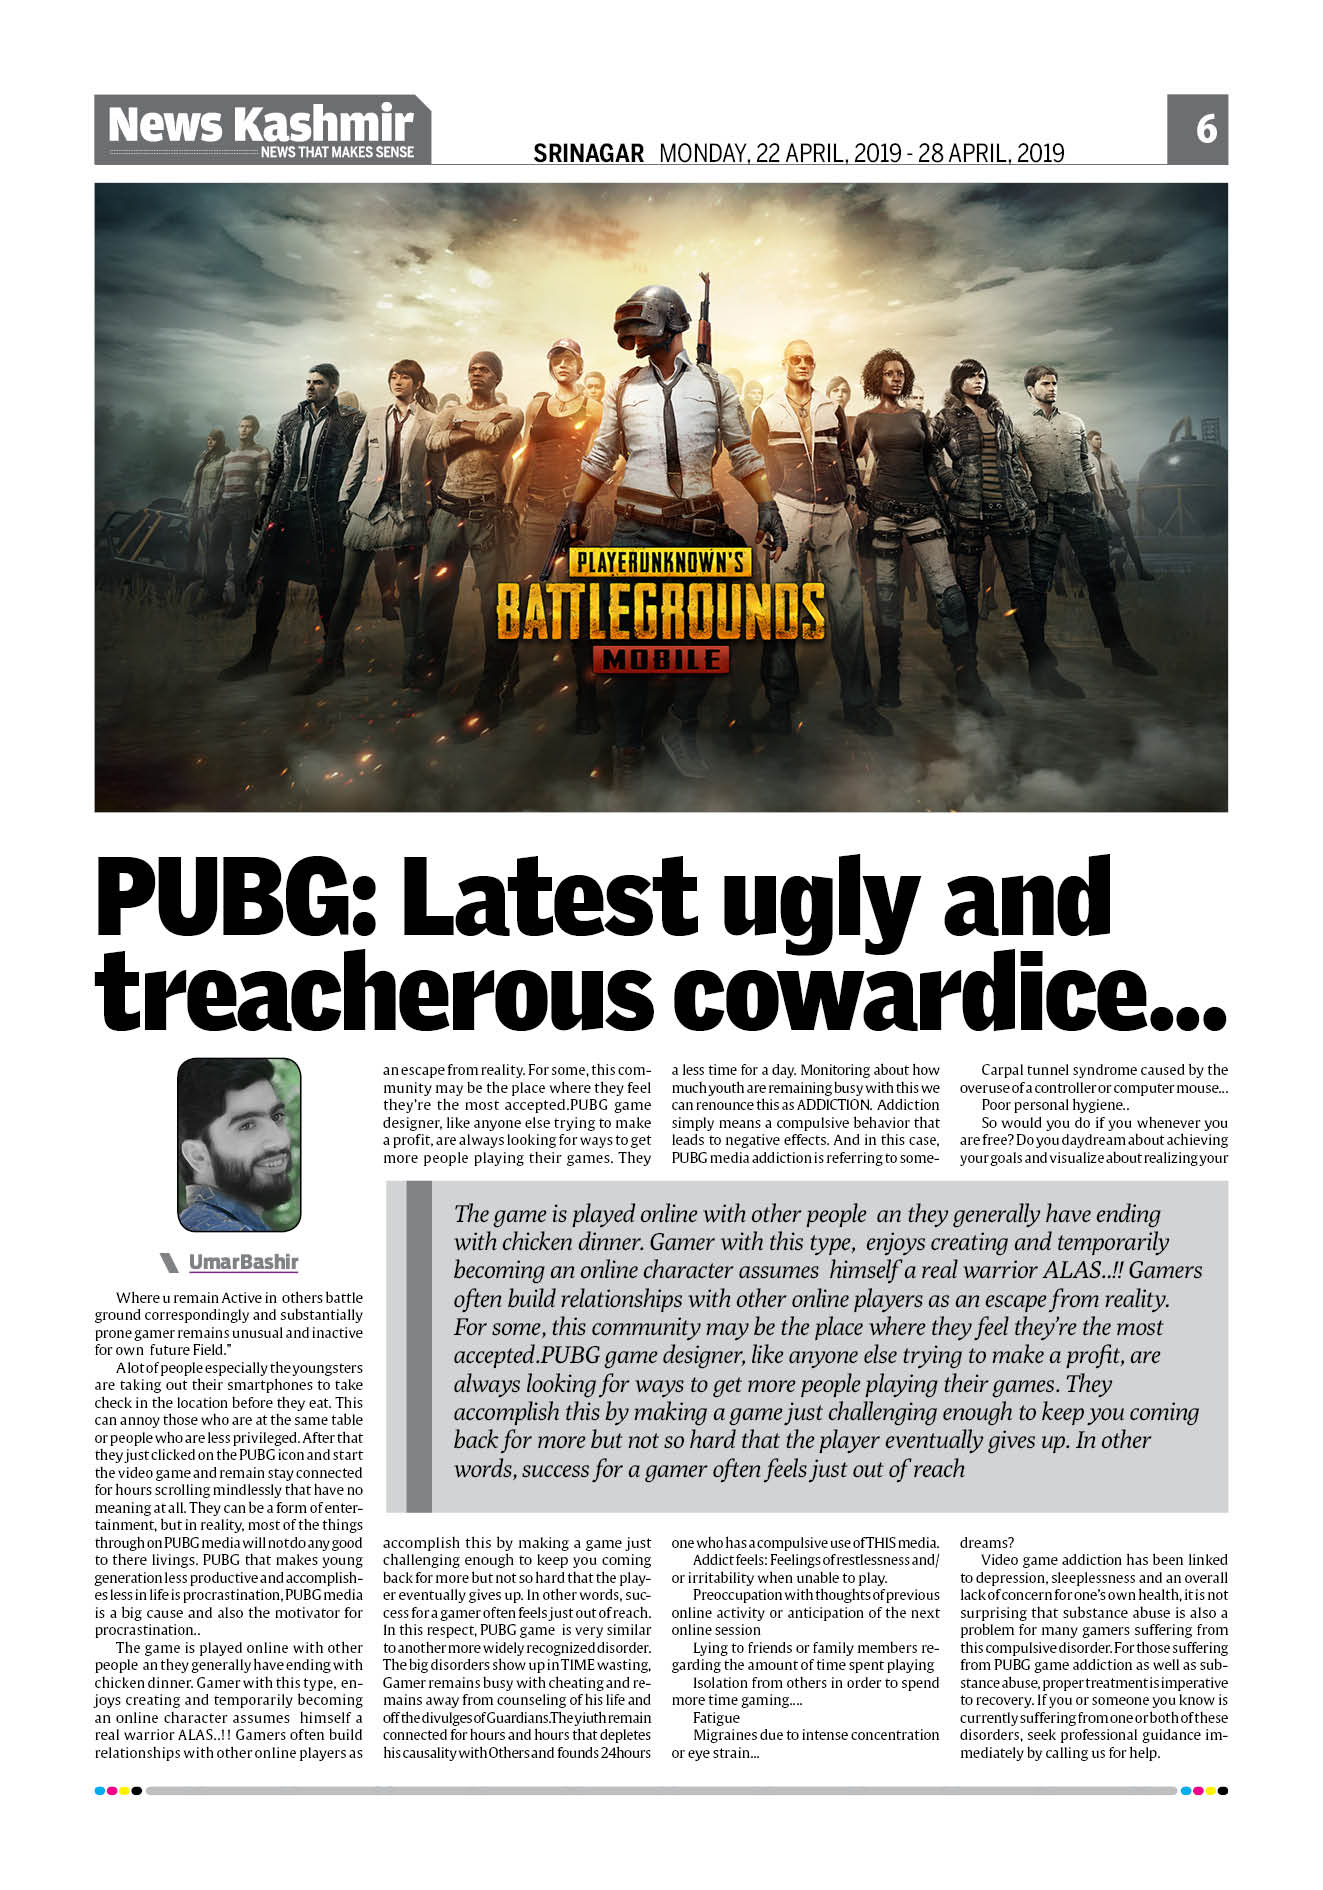 PUBG: Latest ugly and treacherous cowardice